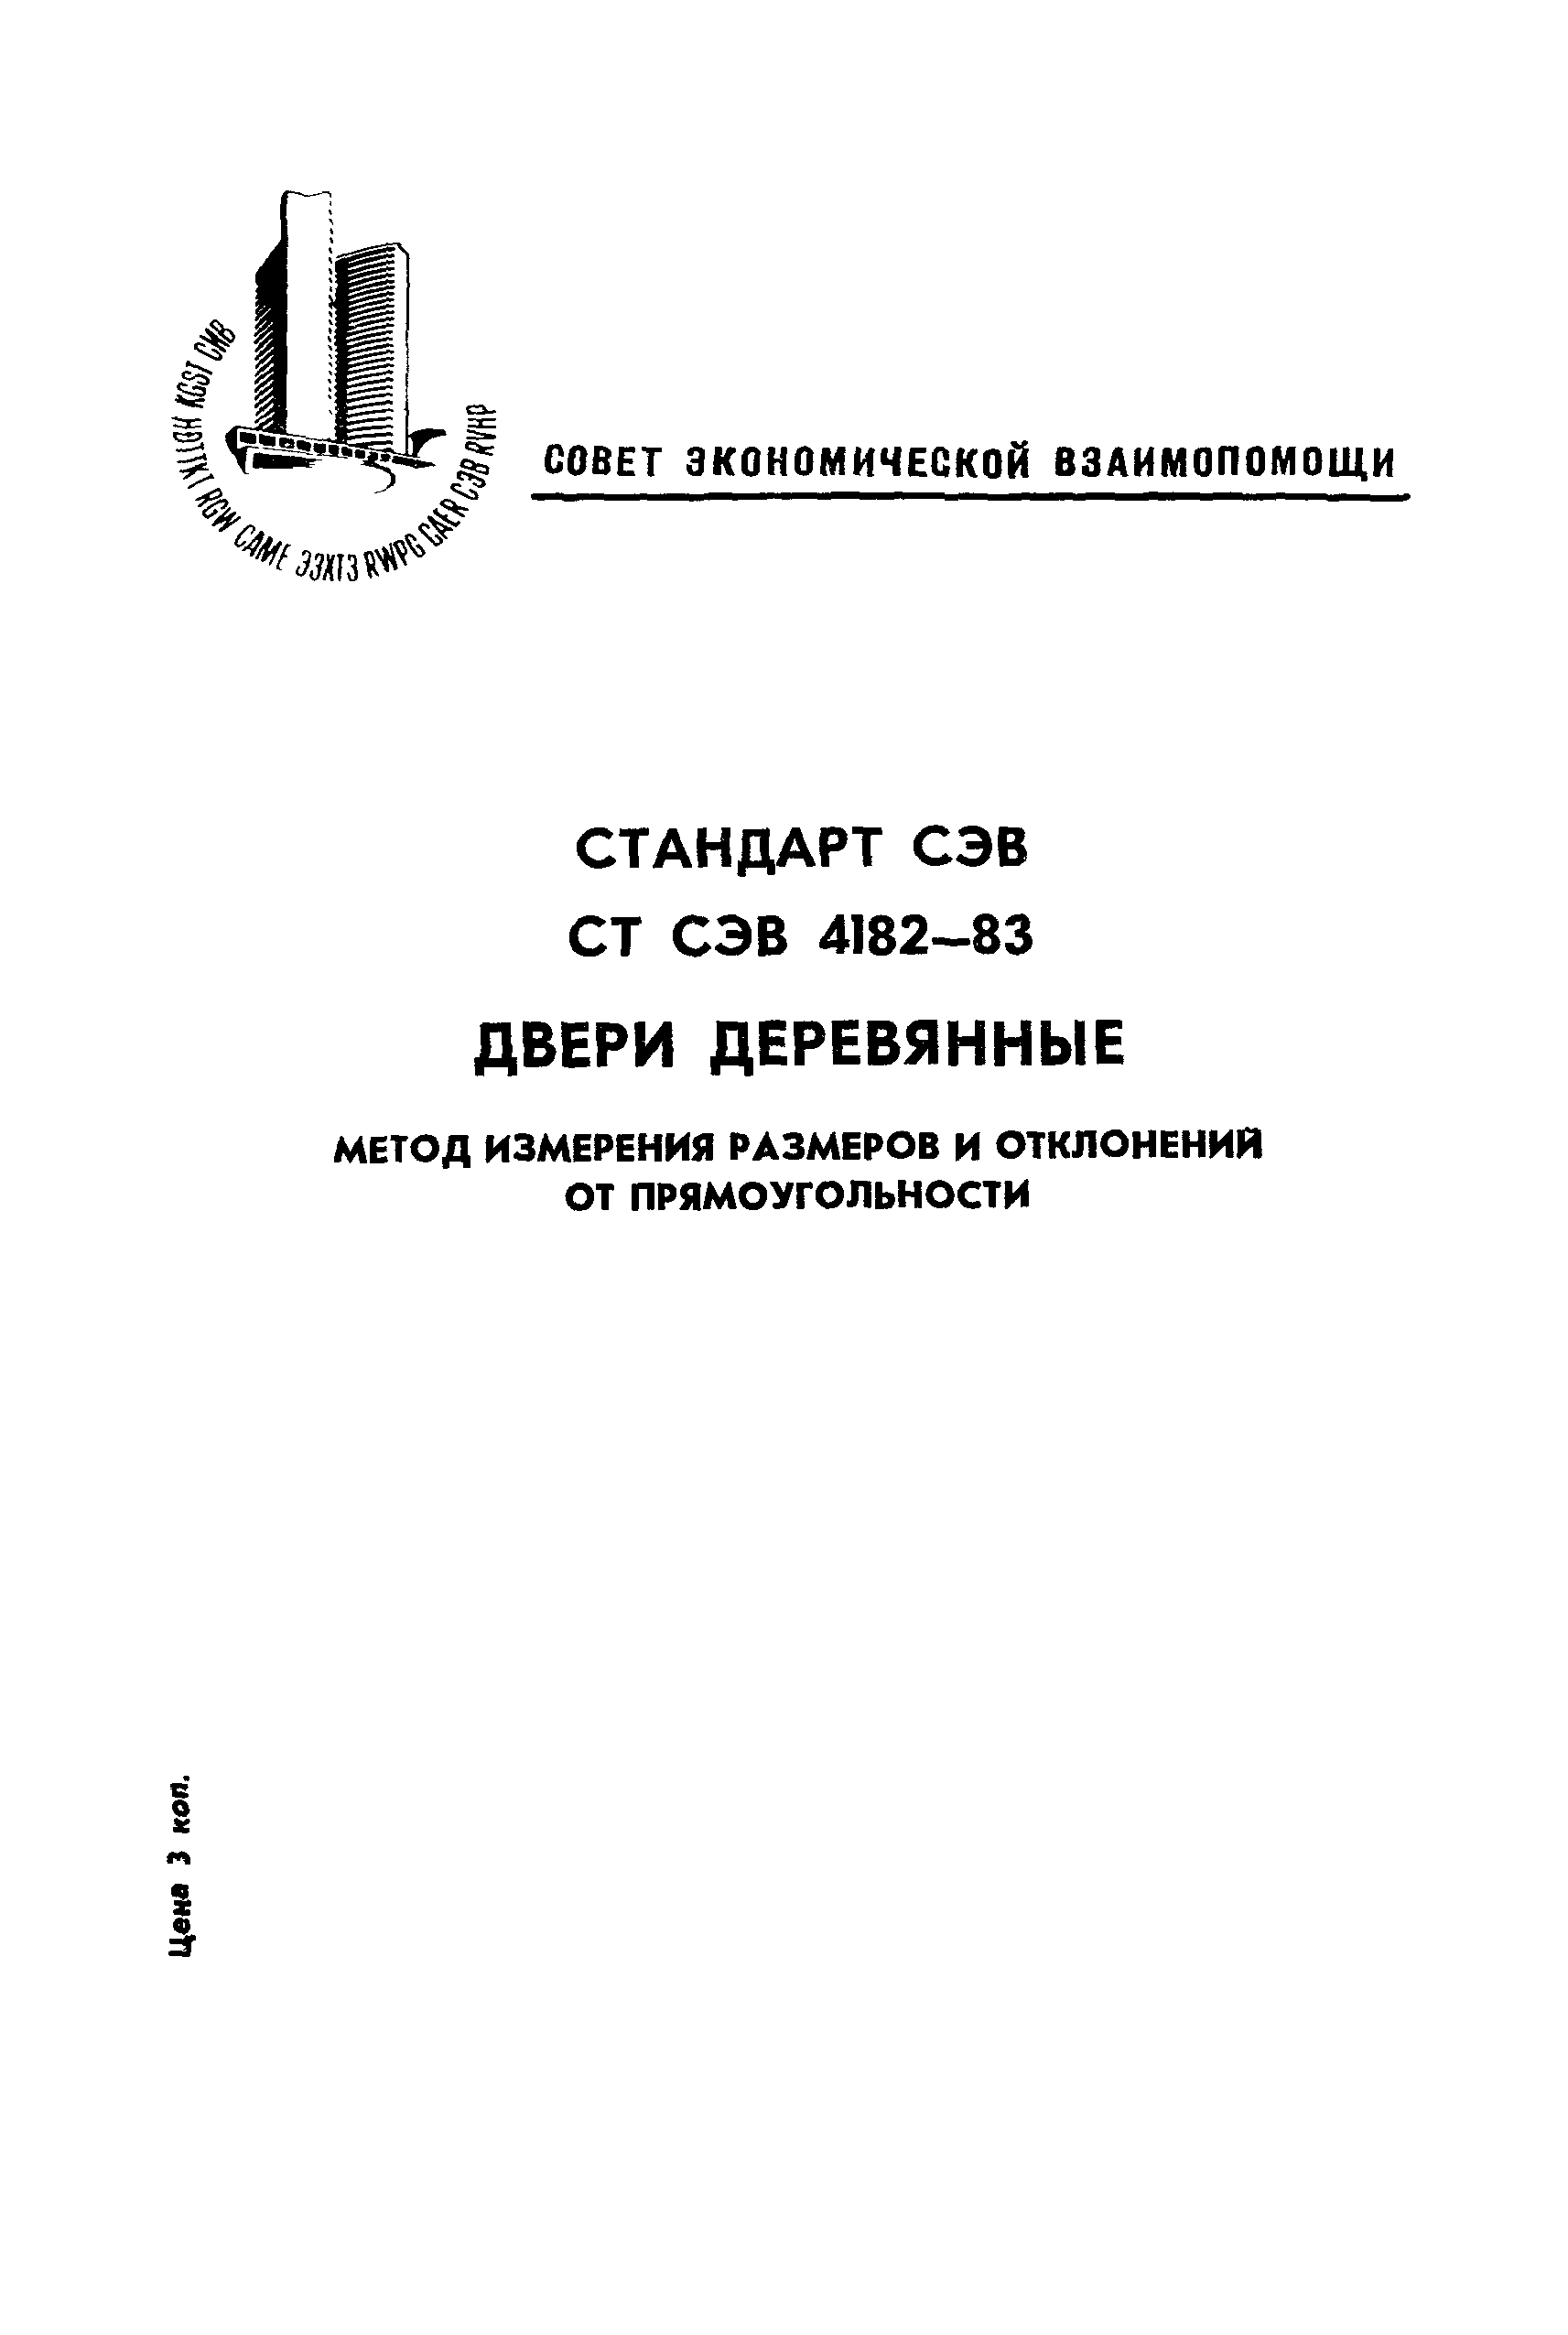 СТ СЭВ 4182-83